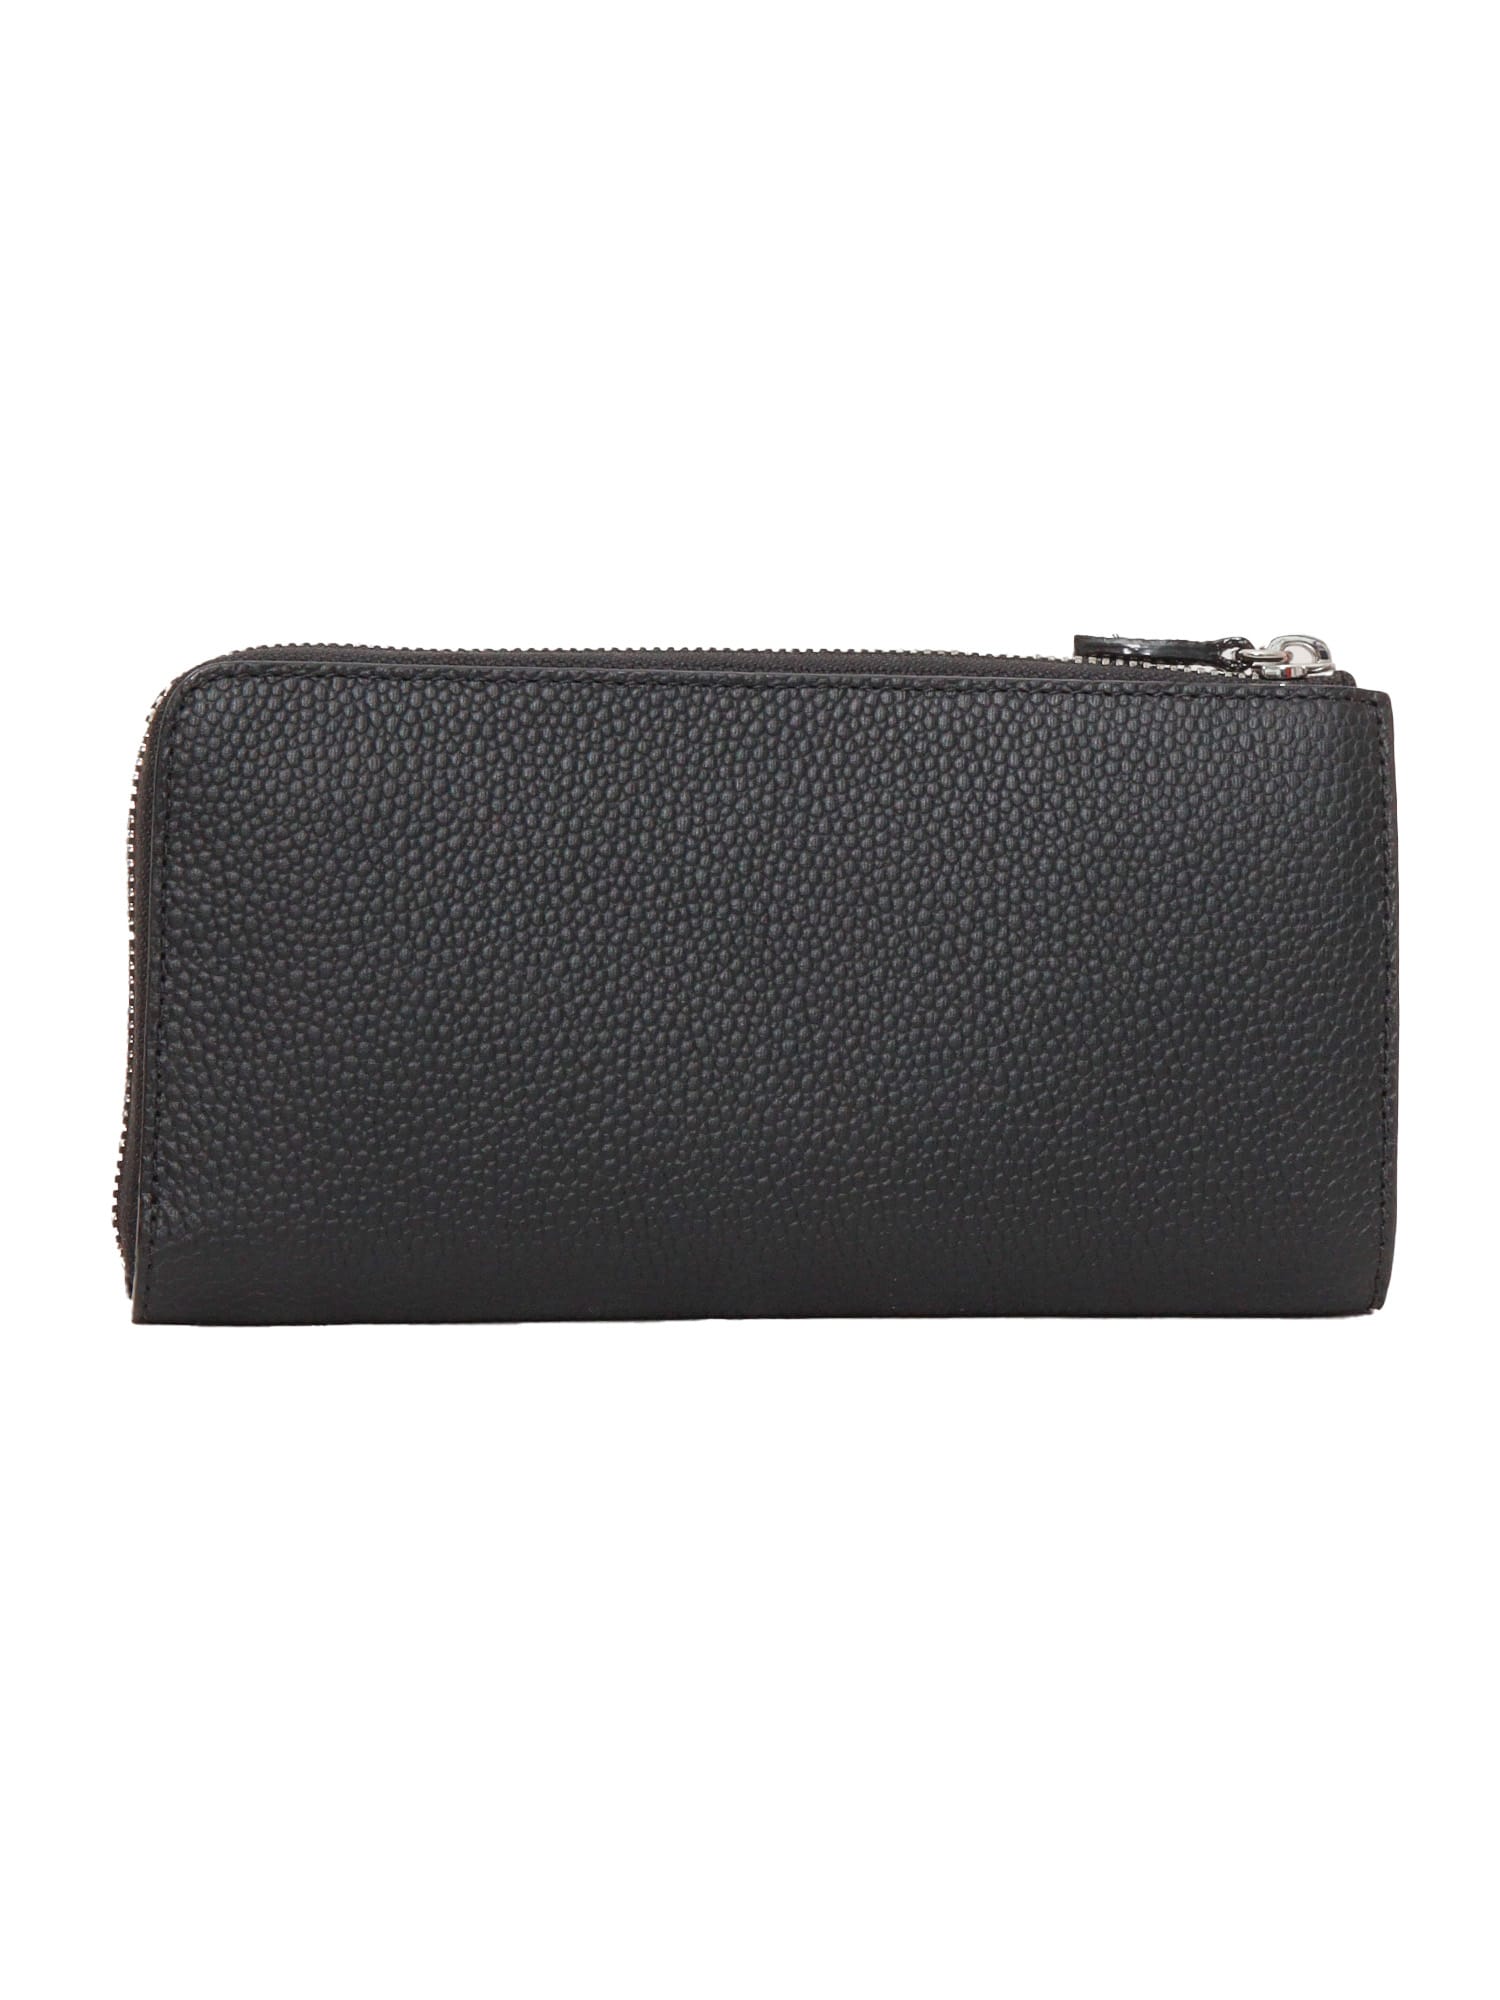 Shop Lancel Black Leather Wallet